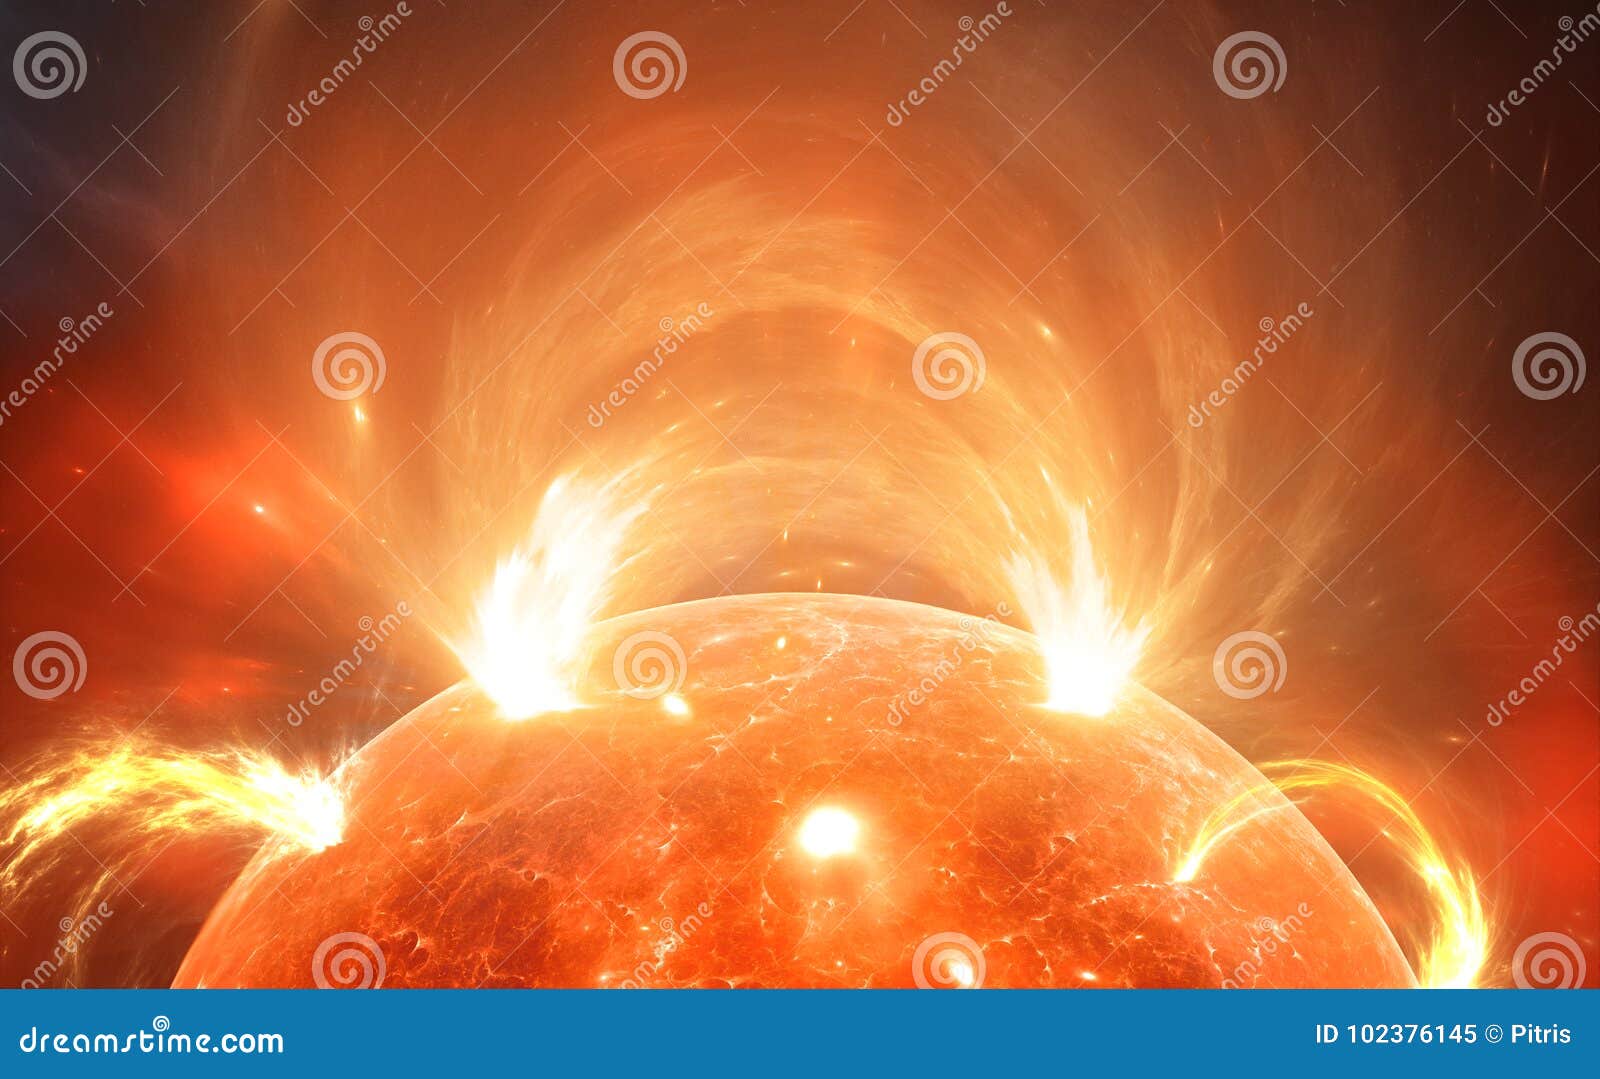 sun with corona. solar storm, solar flares